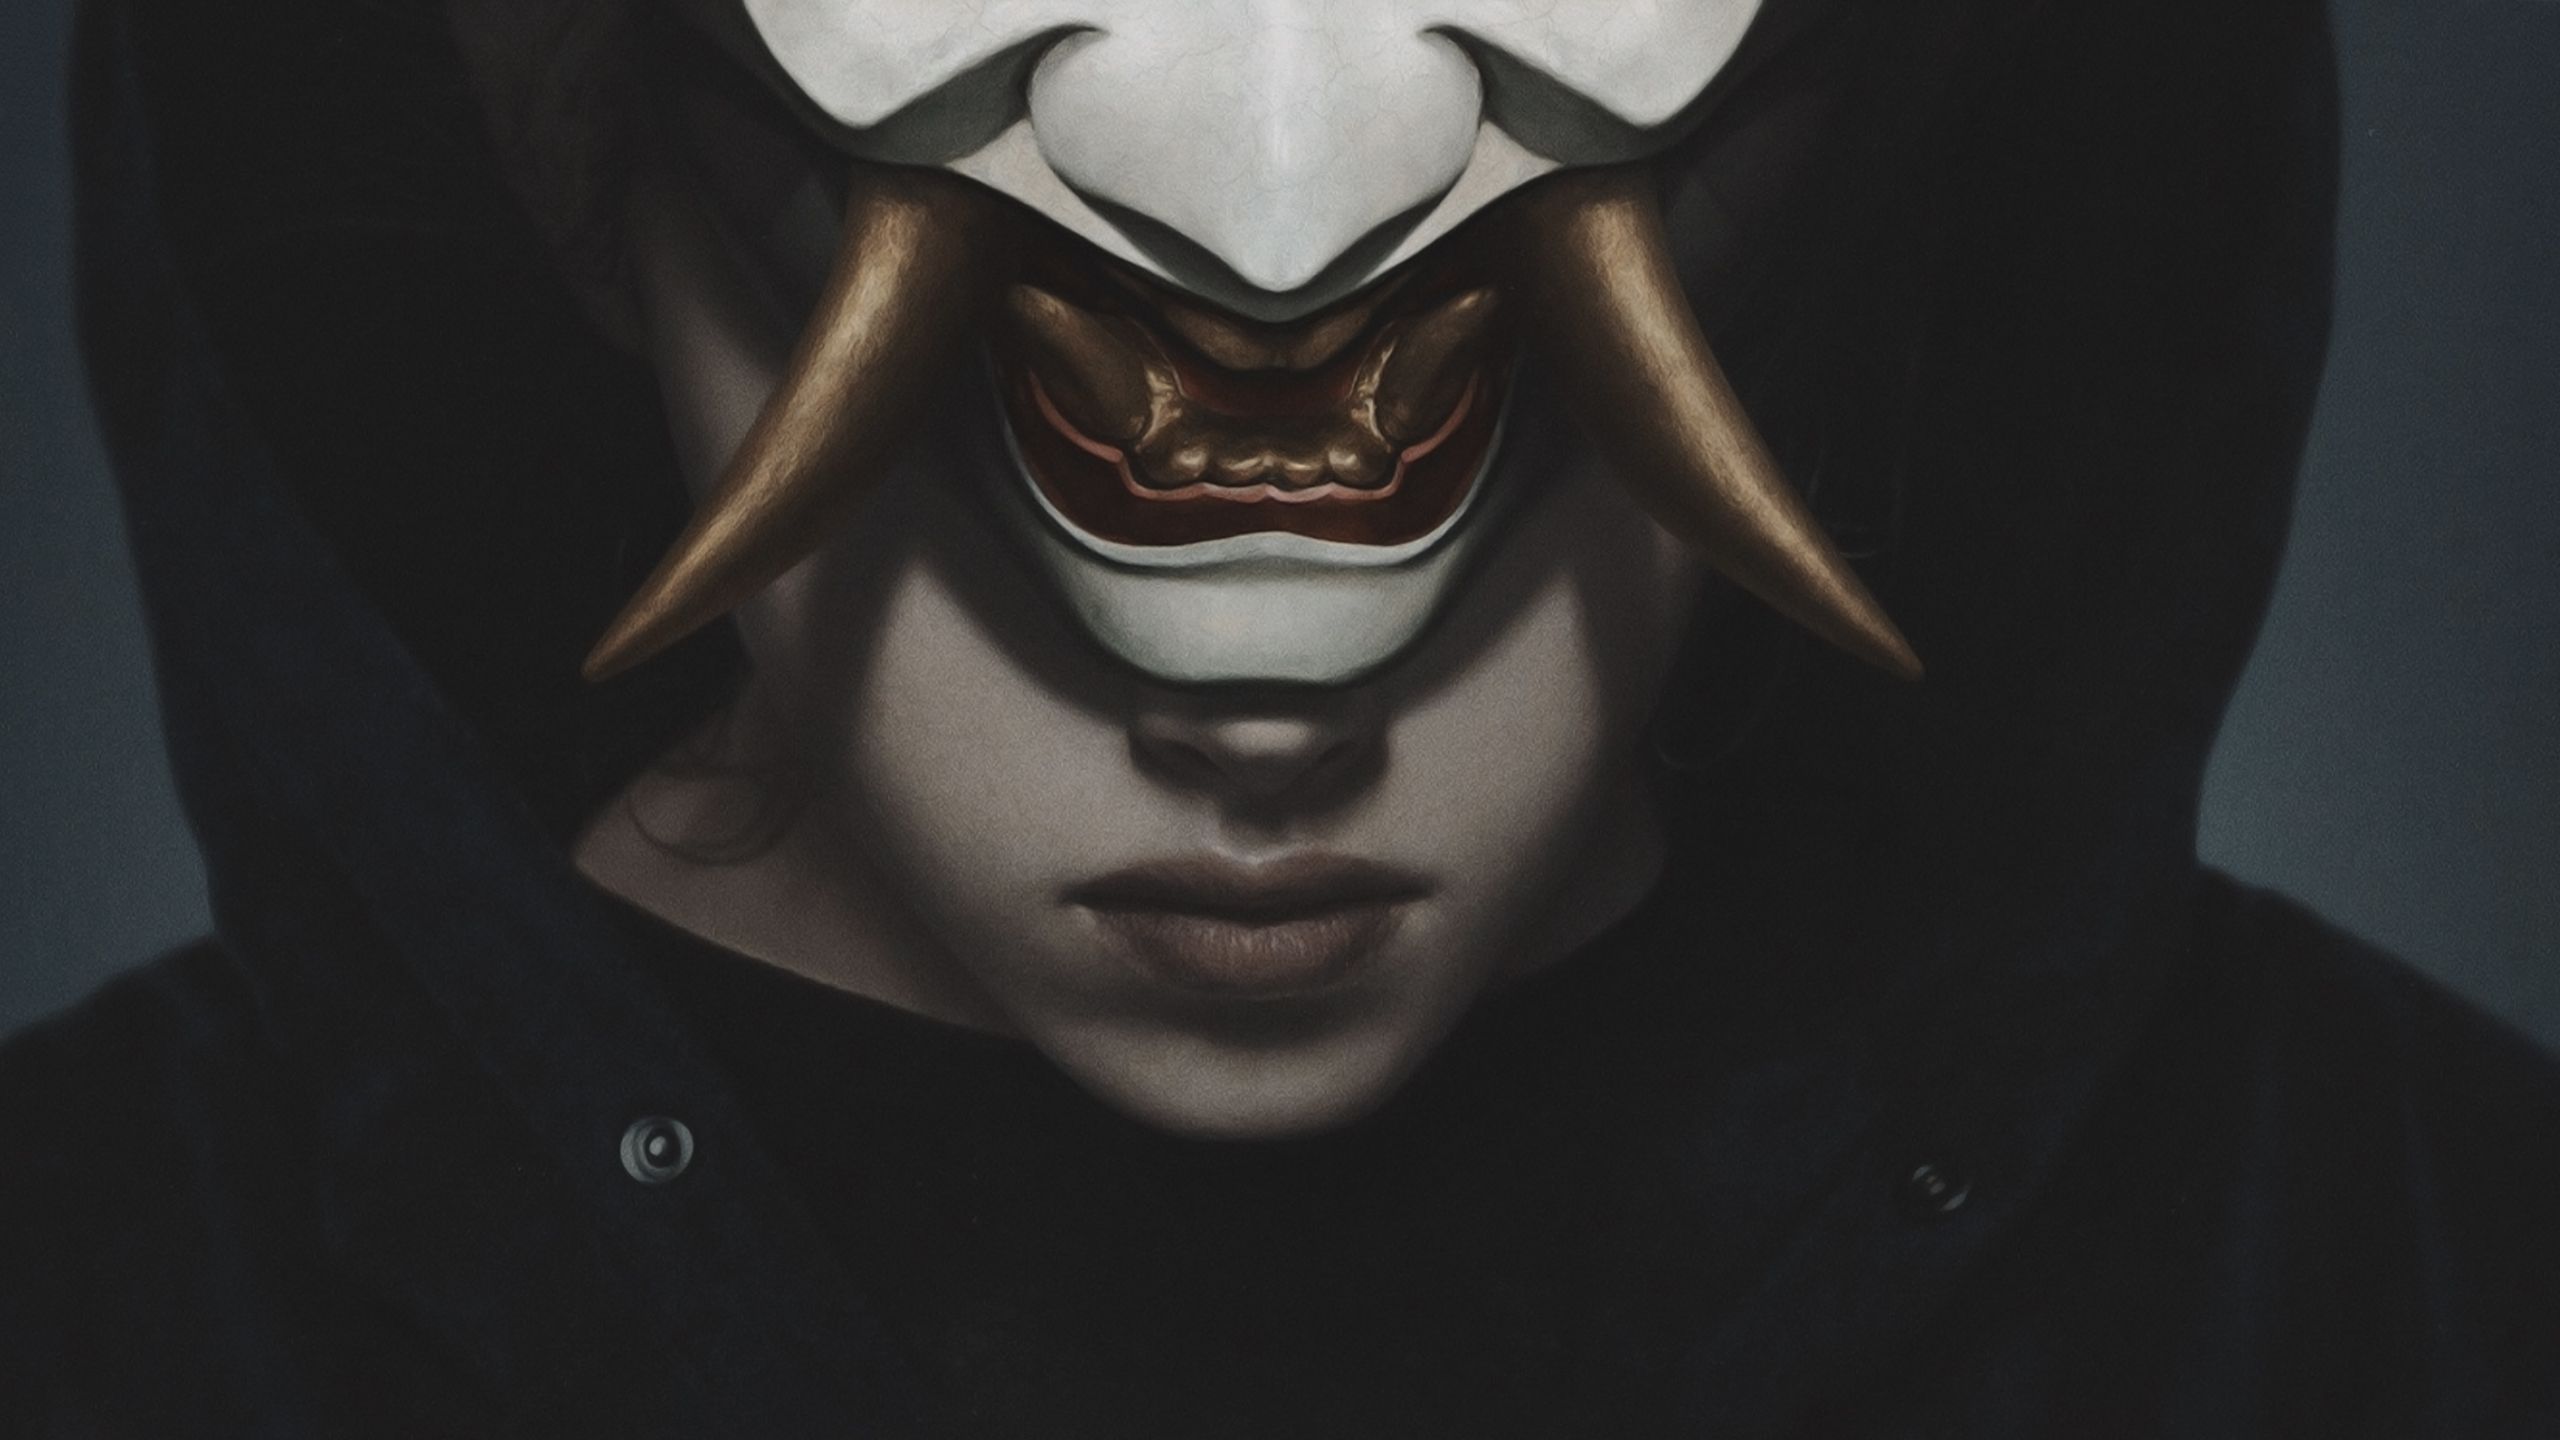 Mask Samurai Digital Art Wallpapers